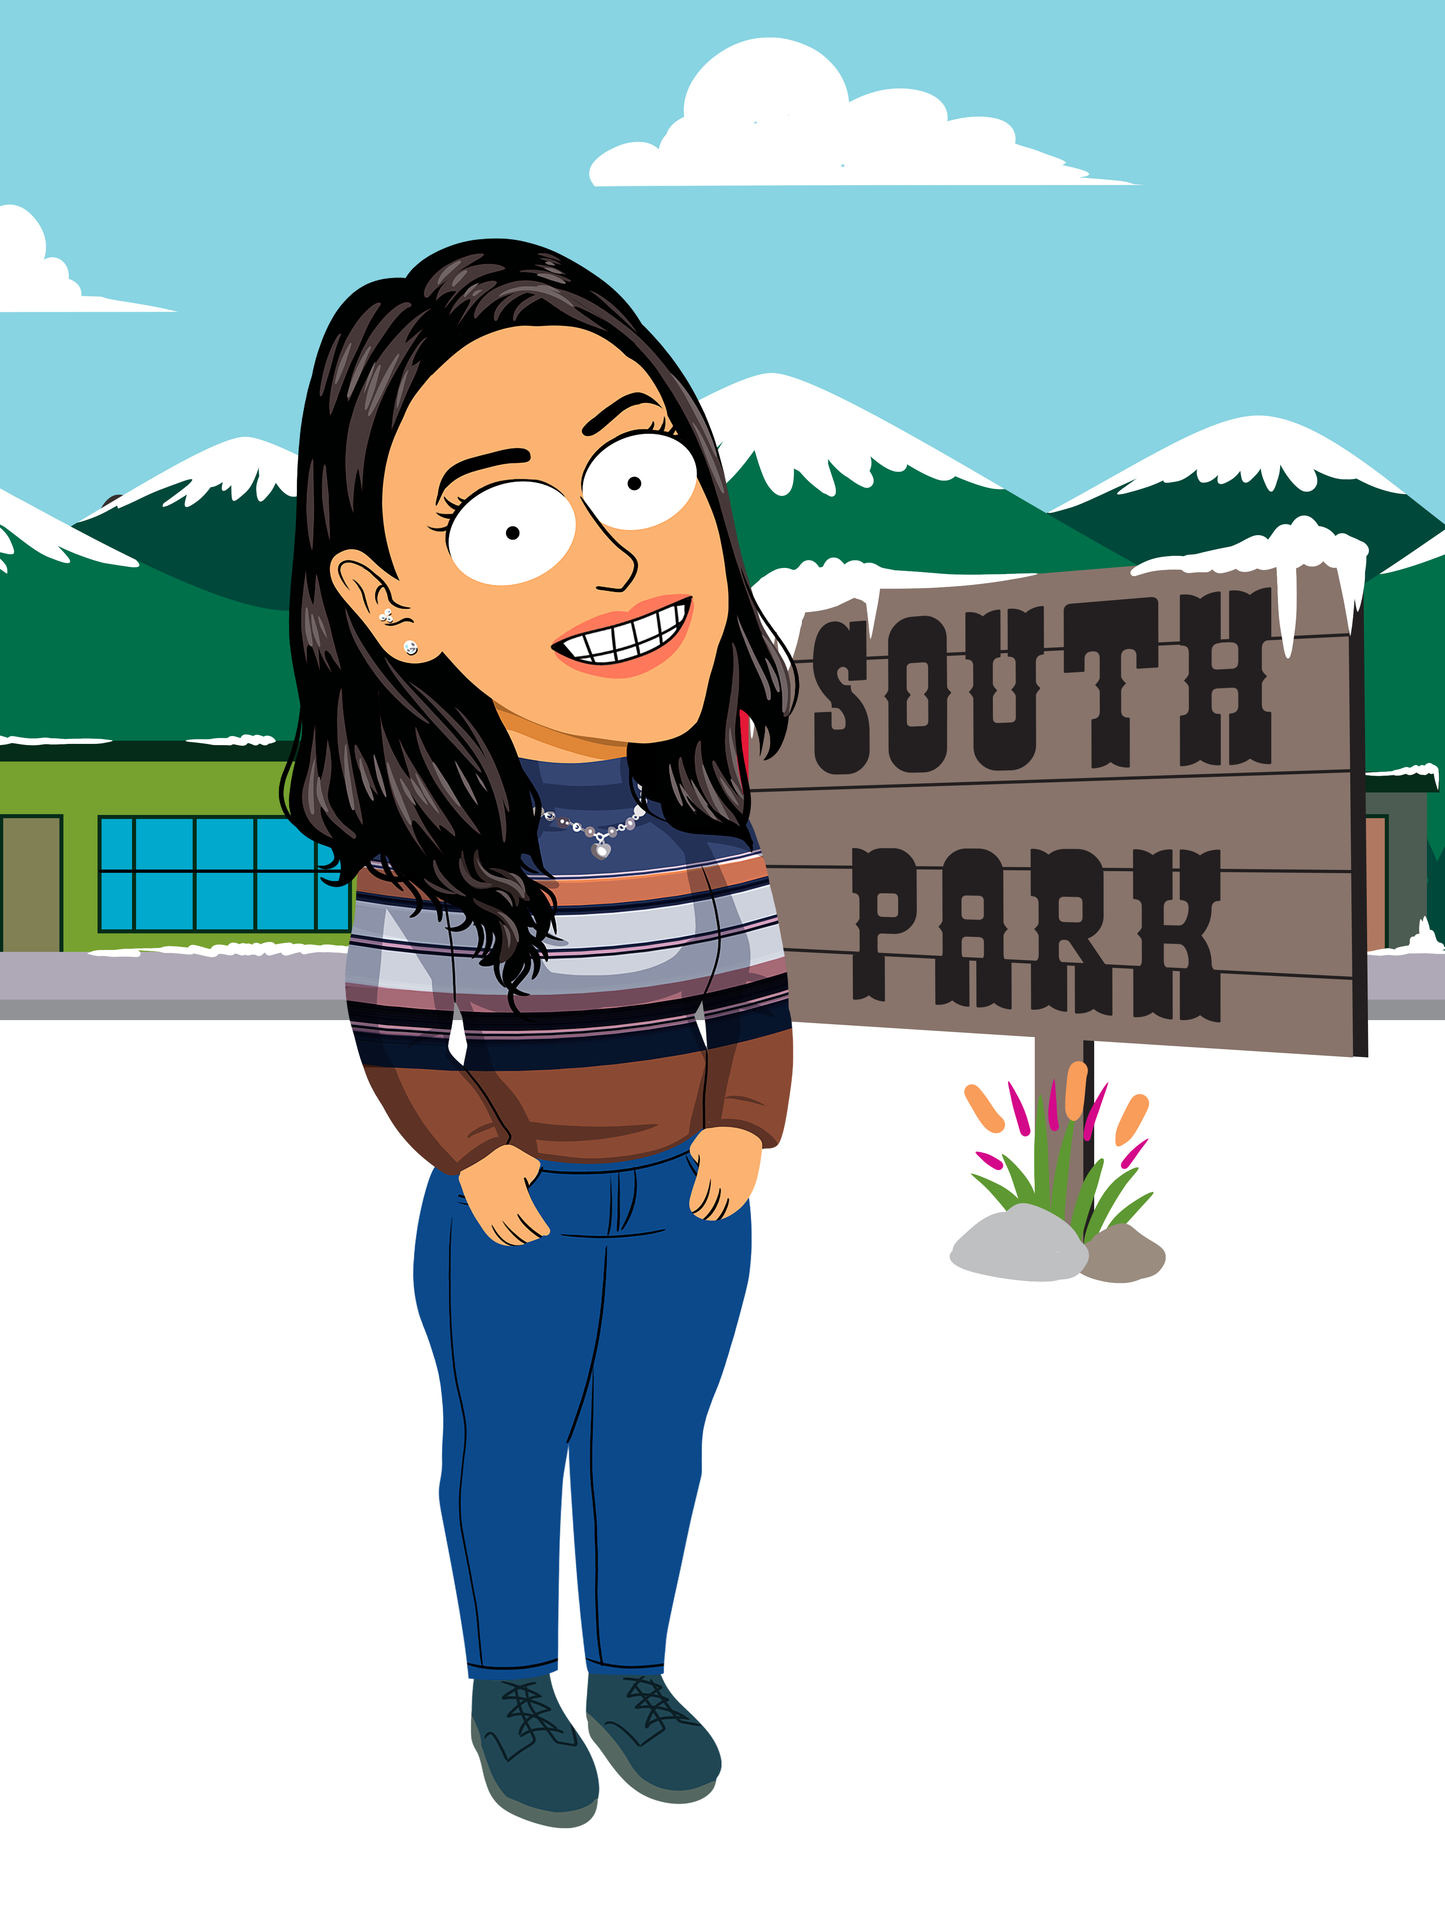 South Park portrait